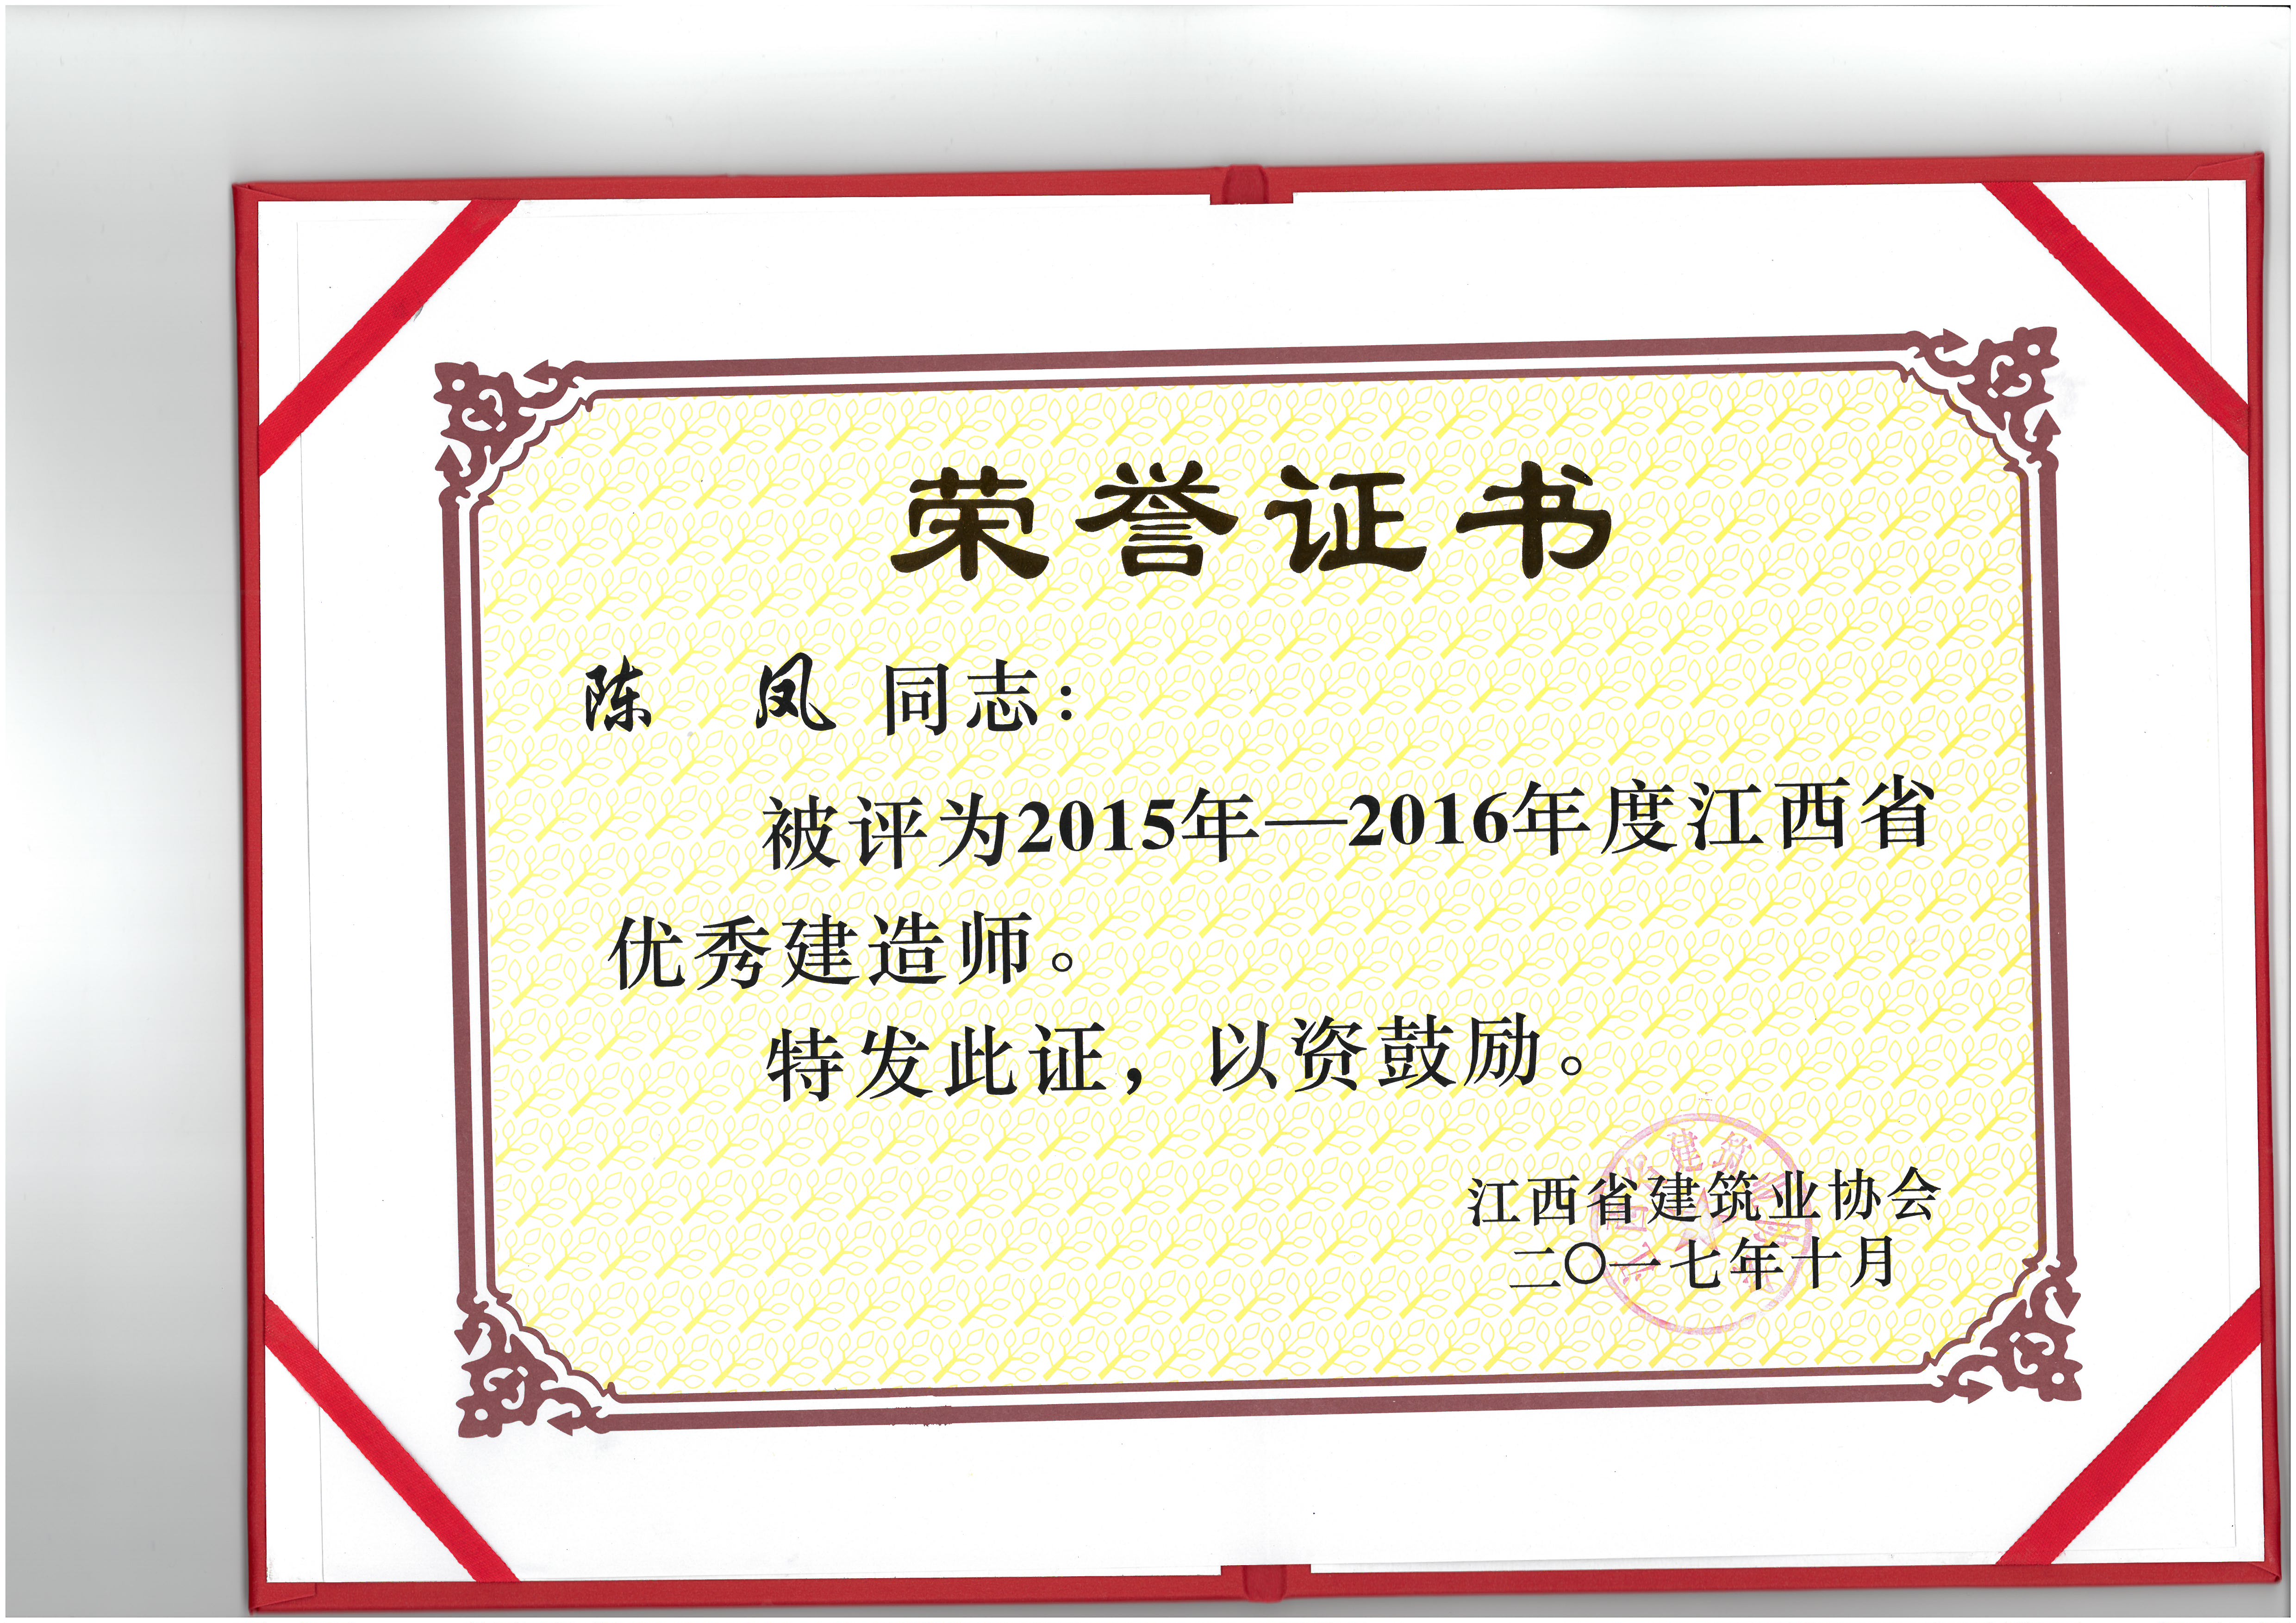 陳鳳被授予2015-2016年度“優秀建造師”獎項